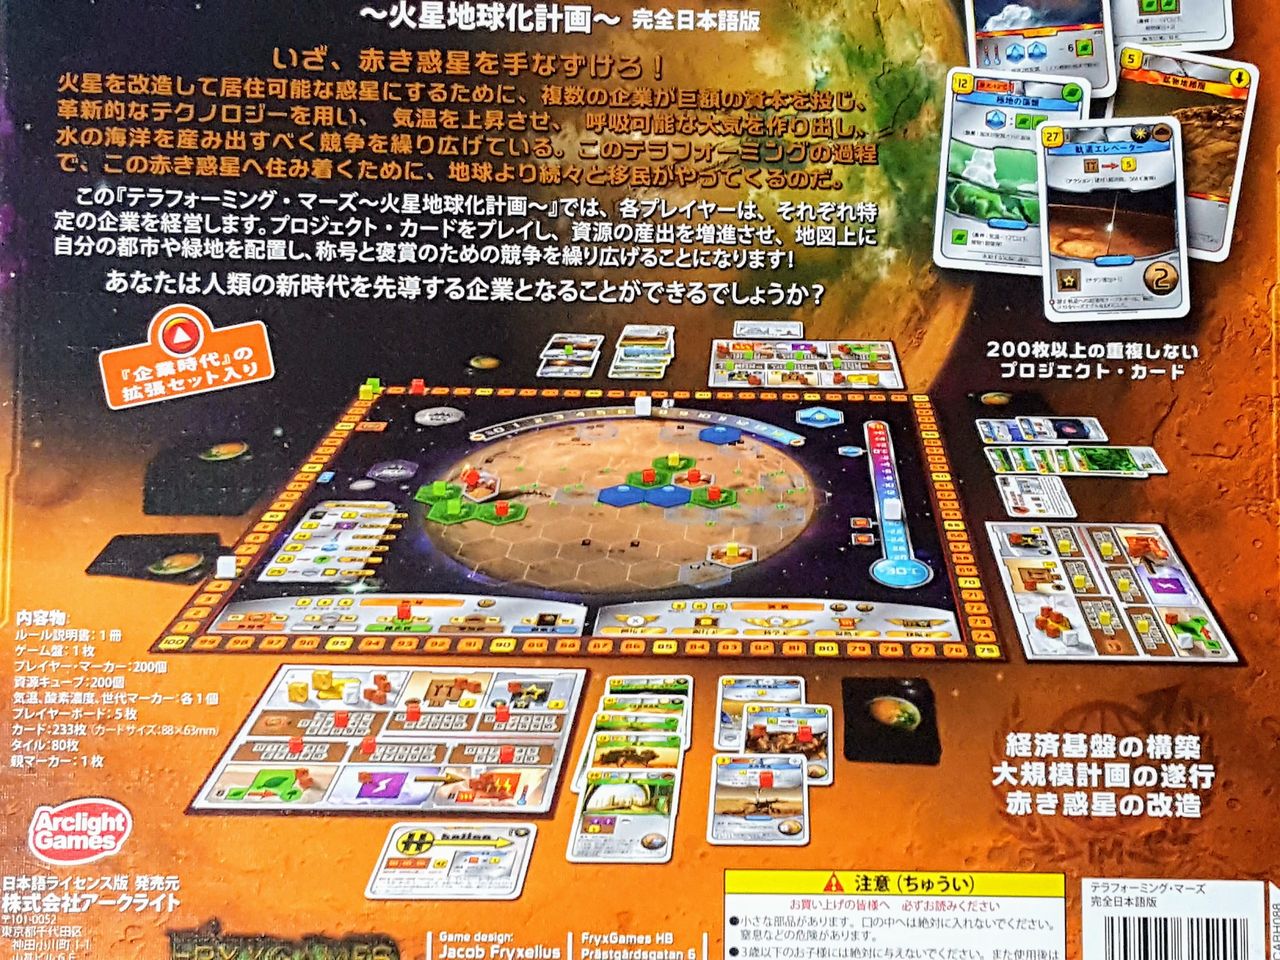 テラフォーミング マーズ 荒削りながらロマン溢れる火星開発ゲーム 和歌山ボードゲーム倶楽部